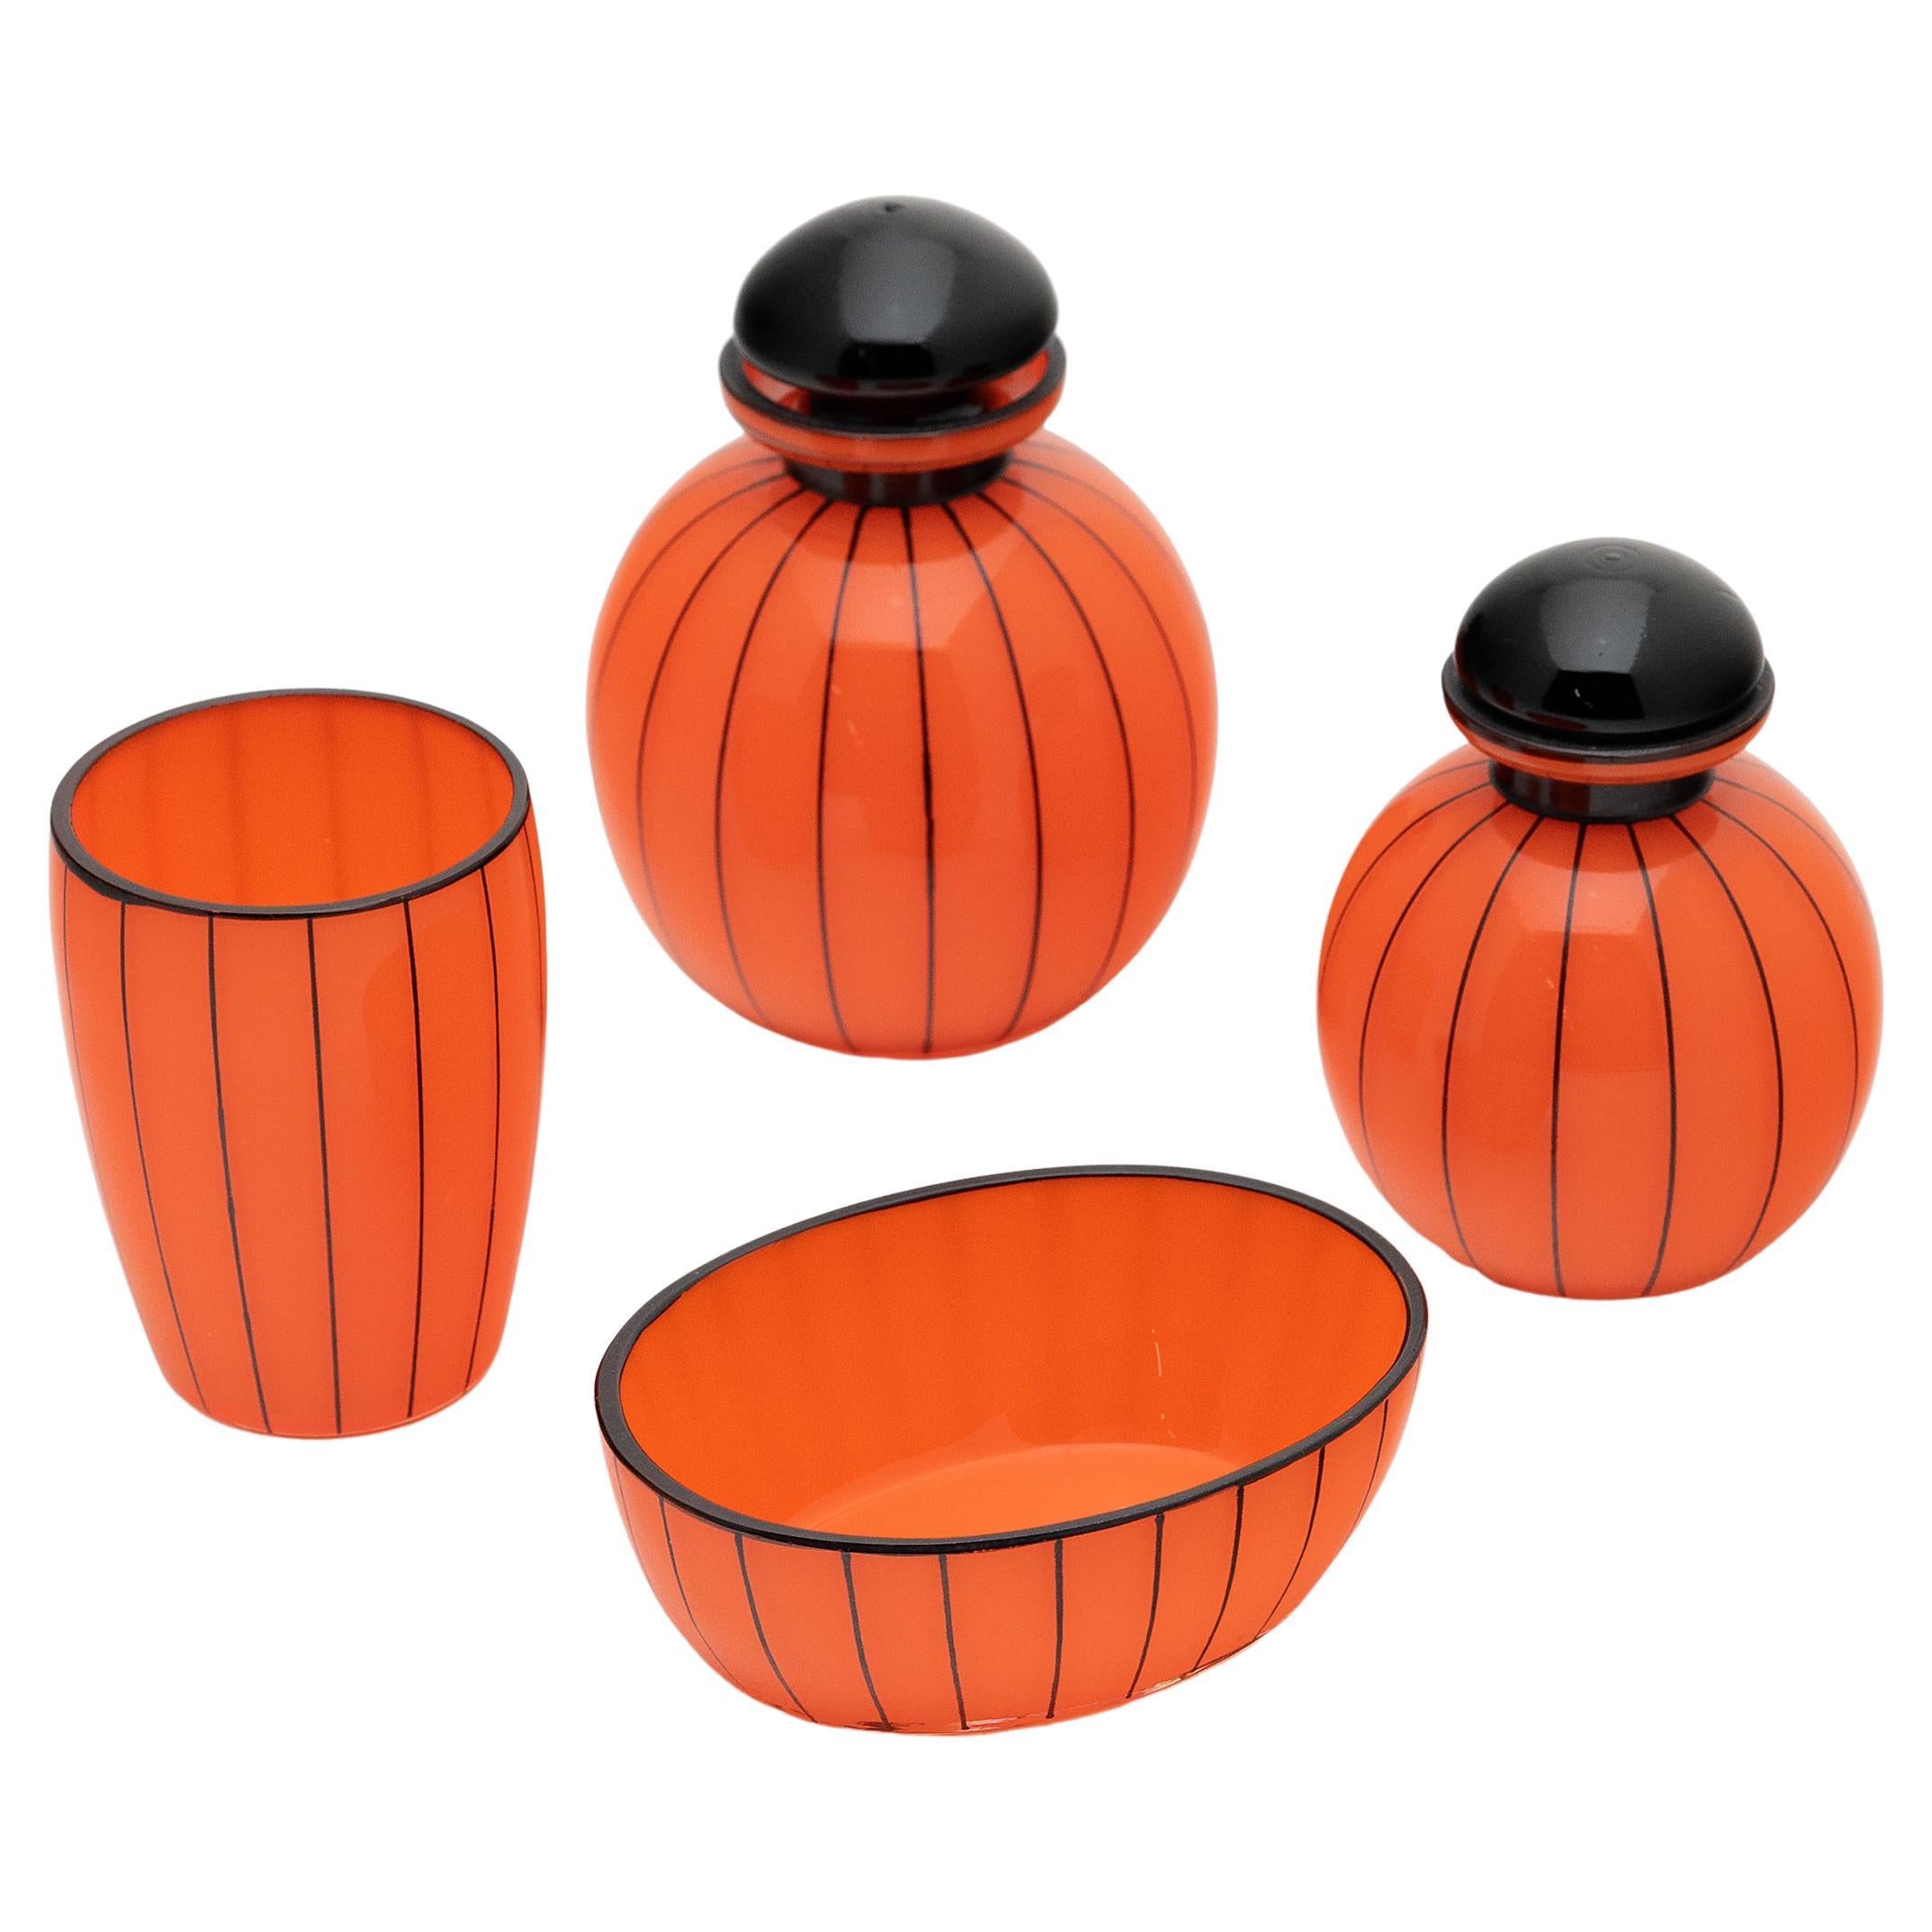 Orangefarbenes Tango-Glas-Set im Art déco-Stil von Michael Powolny für Loetz, um 1920